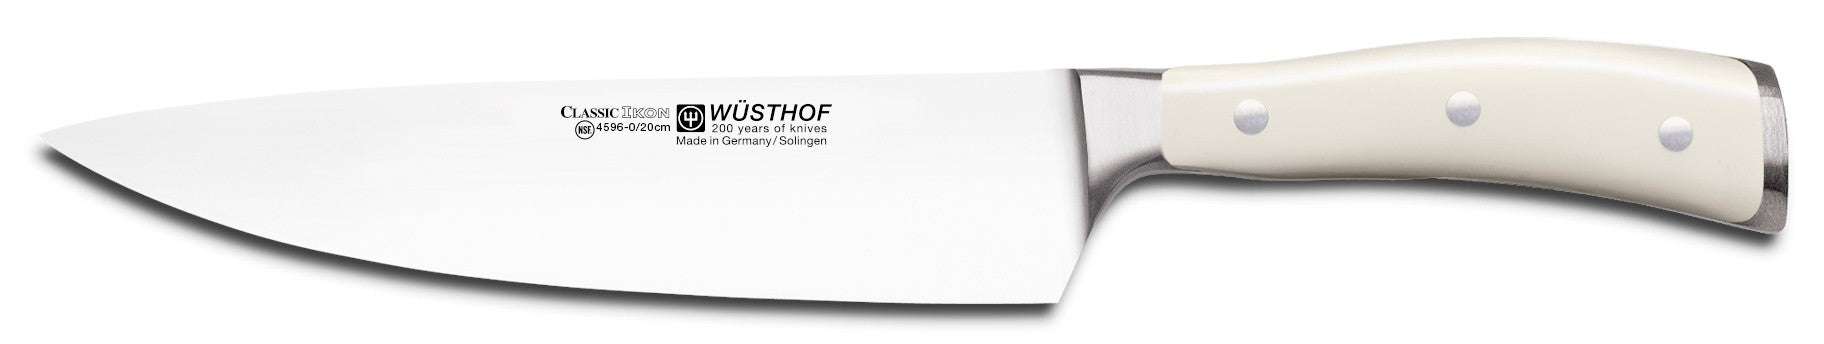 Couteau de chef Wusthof Classic IKON, 20 cm, crème - 4596-6-20